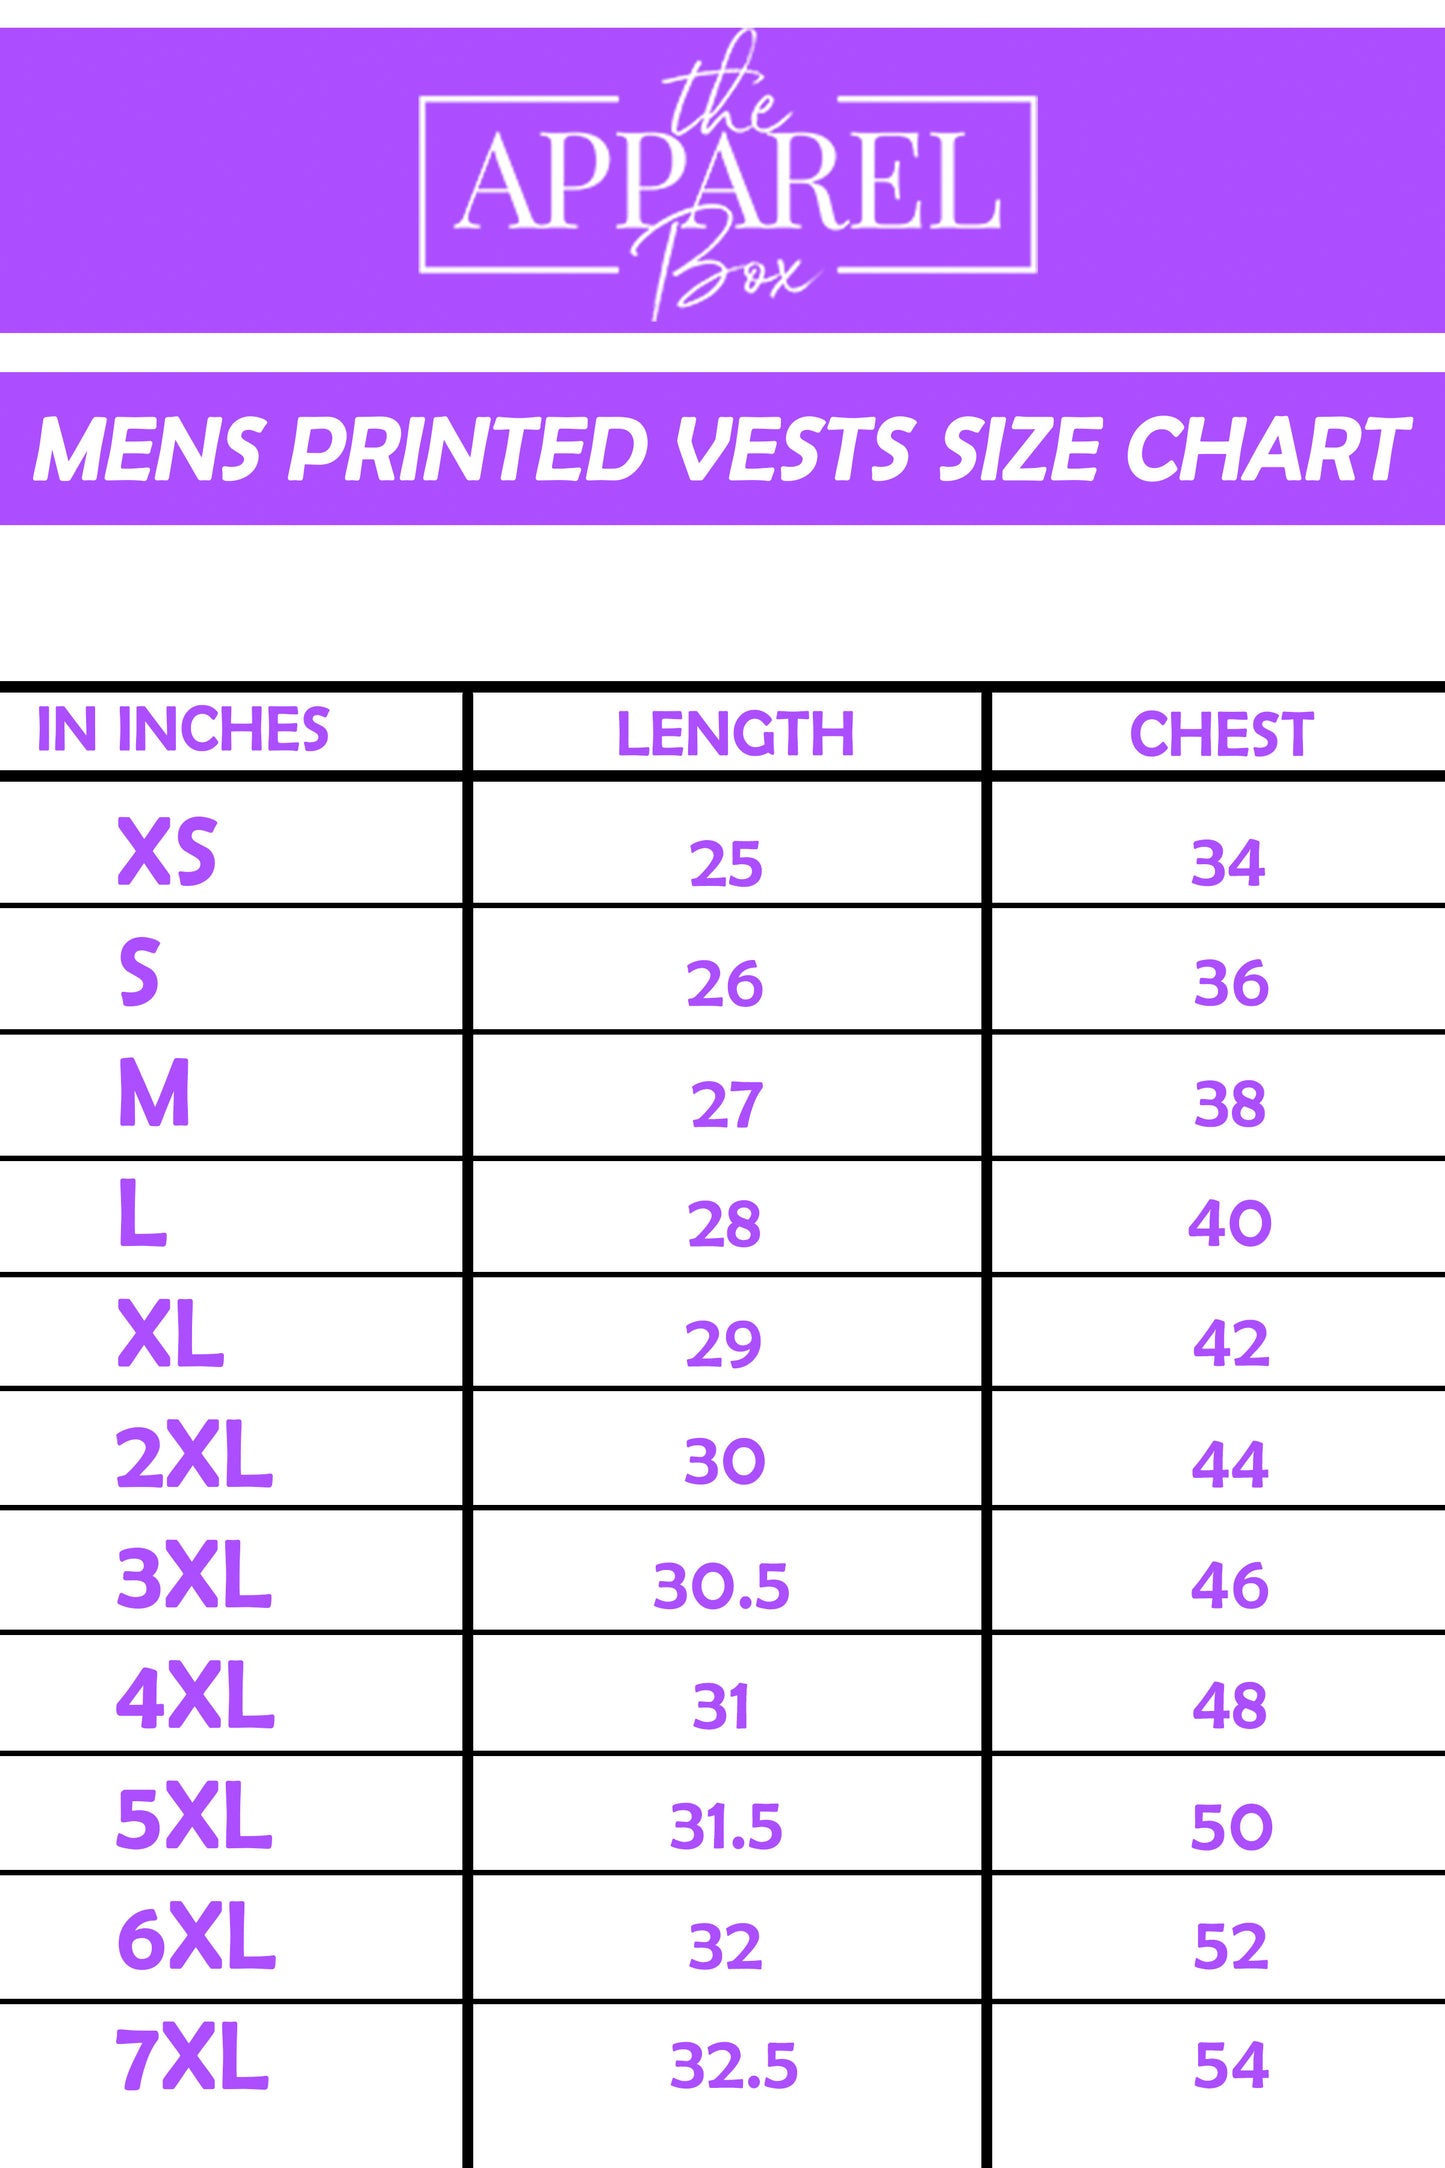 Printed Vest#30